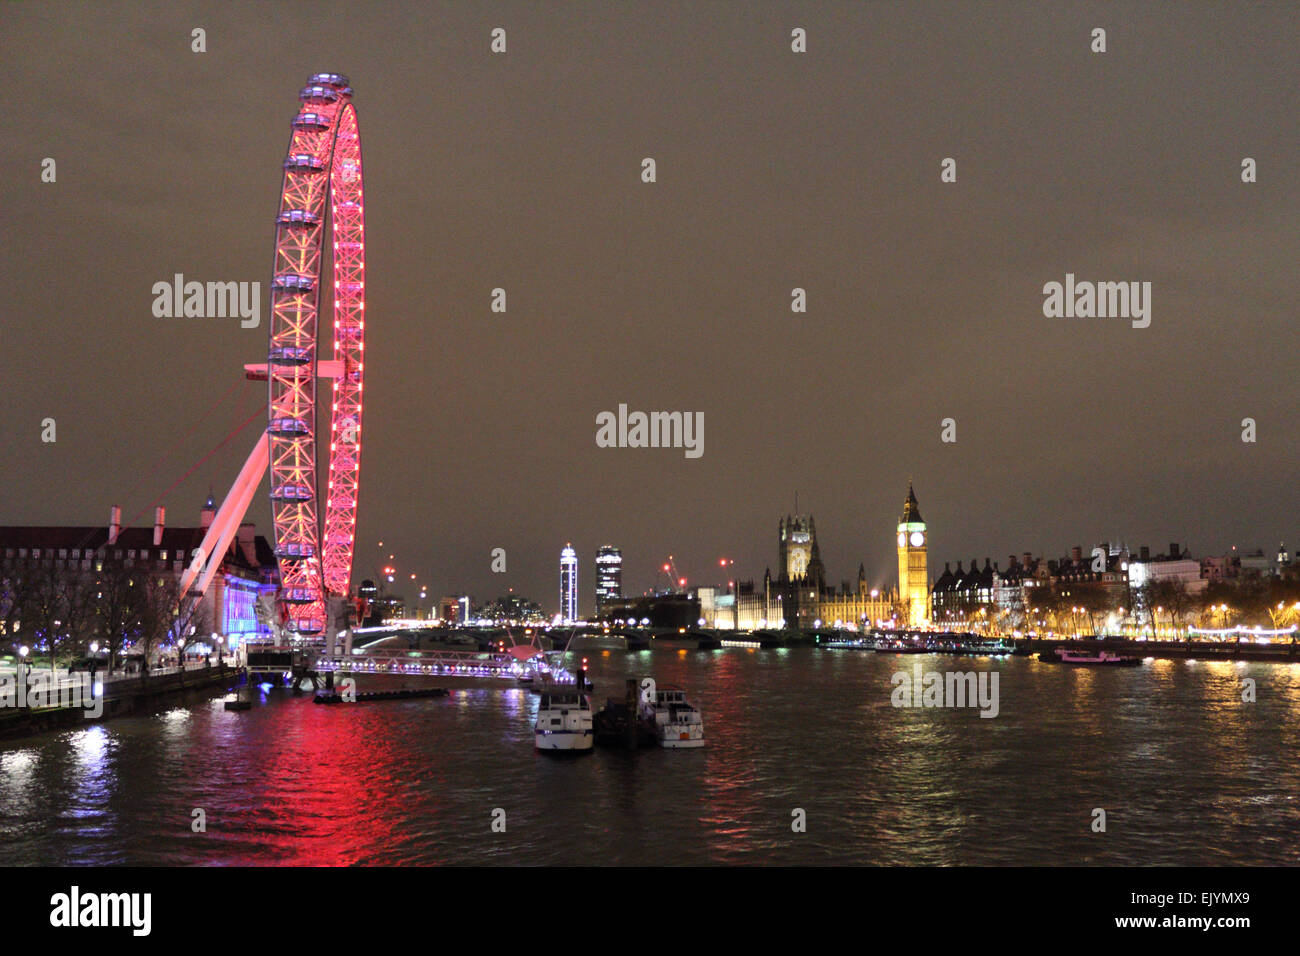 Londra England Regno Unito. Il 2 aprile 2015. Dopo il tramonto sulla Southbank London Eye è illuminato con le luci rosse della attuale sponsor Coca-Cola, con le case del Parlamento al di là. Come si vede dal Giubileo ponte pedonale attraverso il fiume Tamigi. Foto Stock